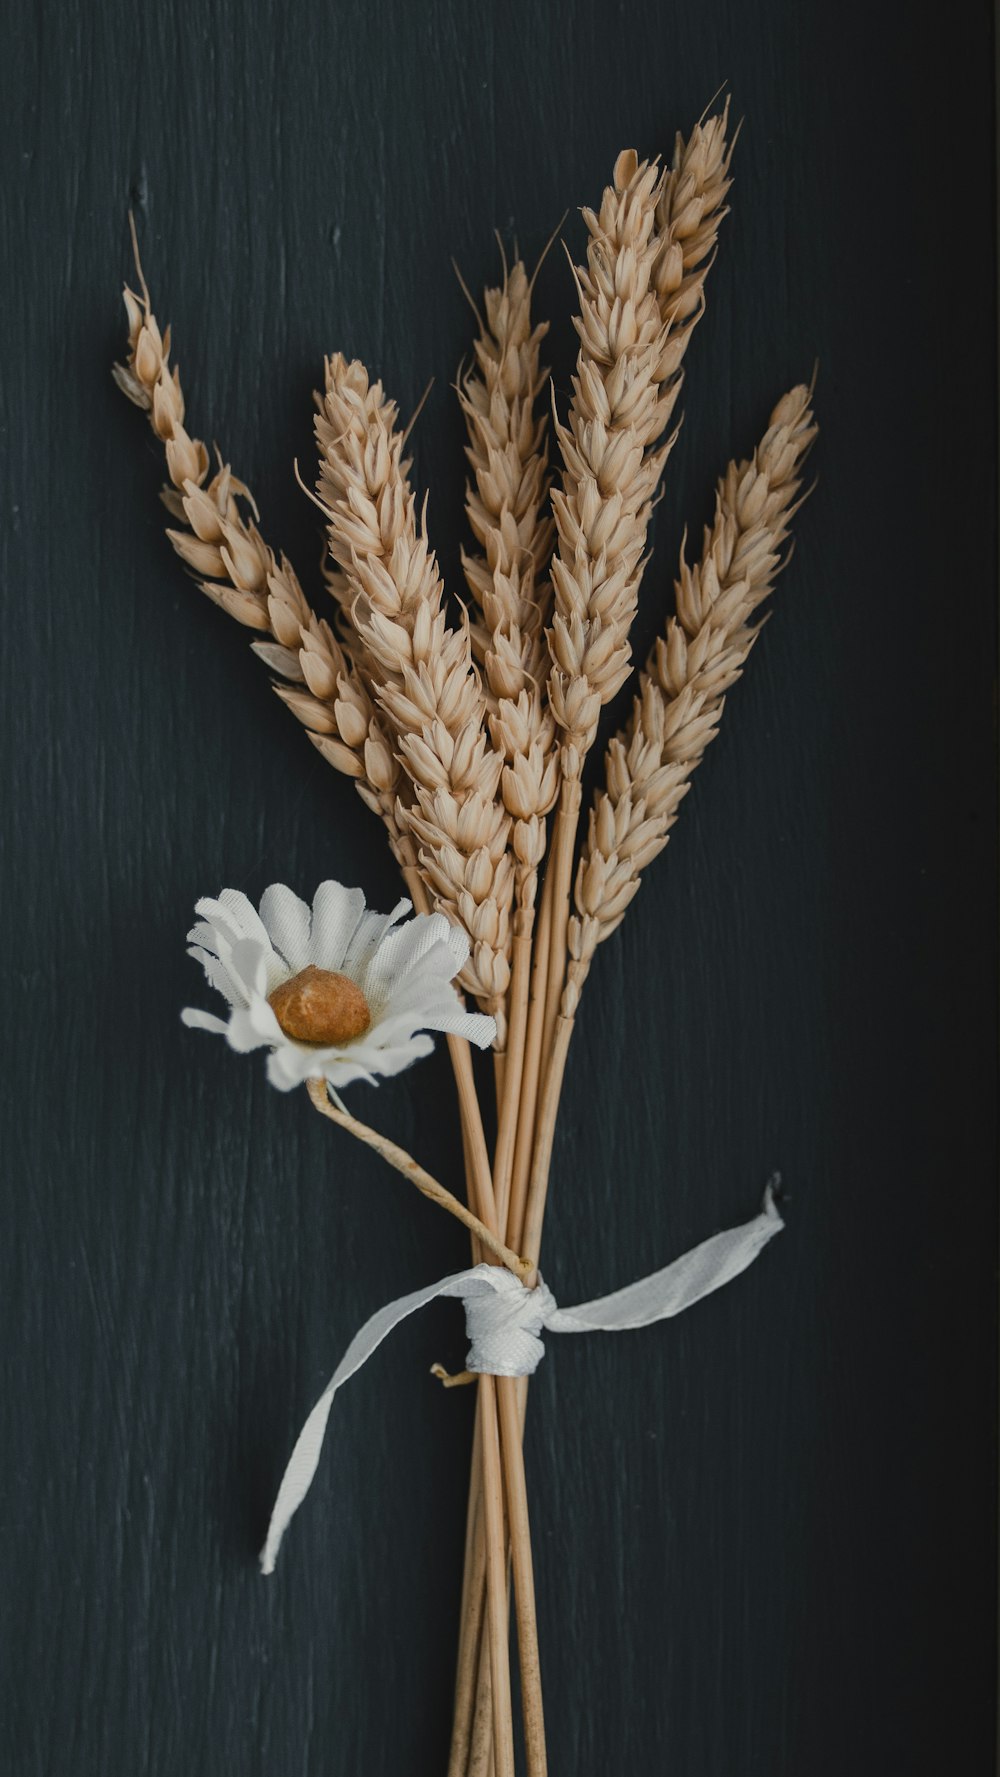 flor blanca sobre trigo moreno